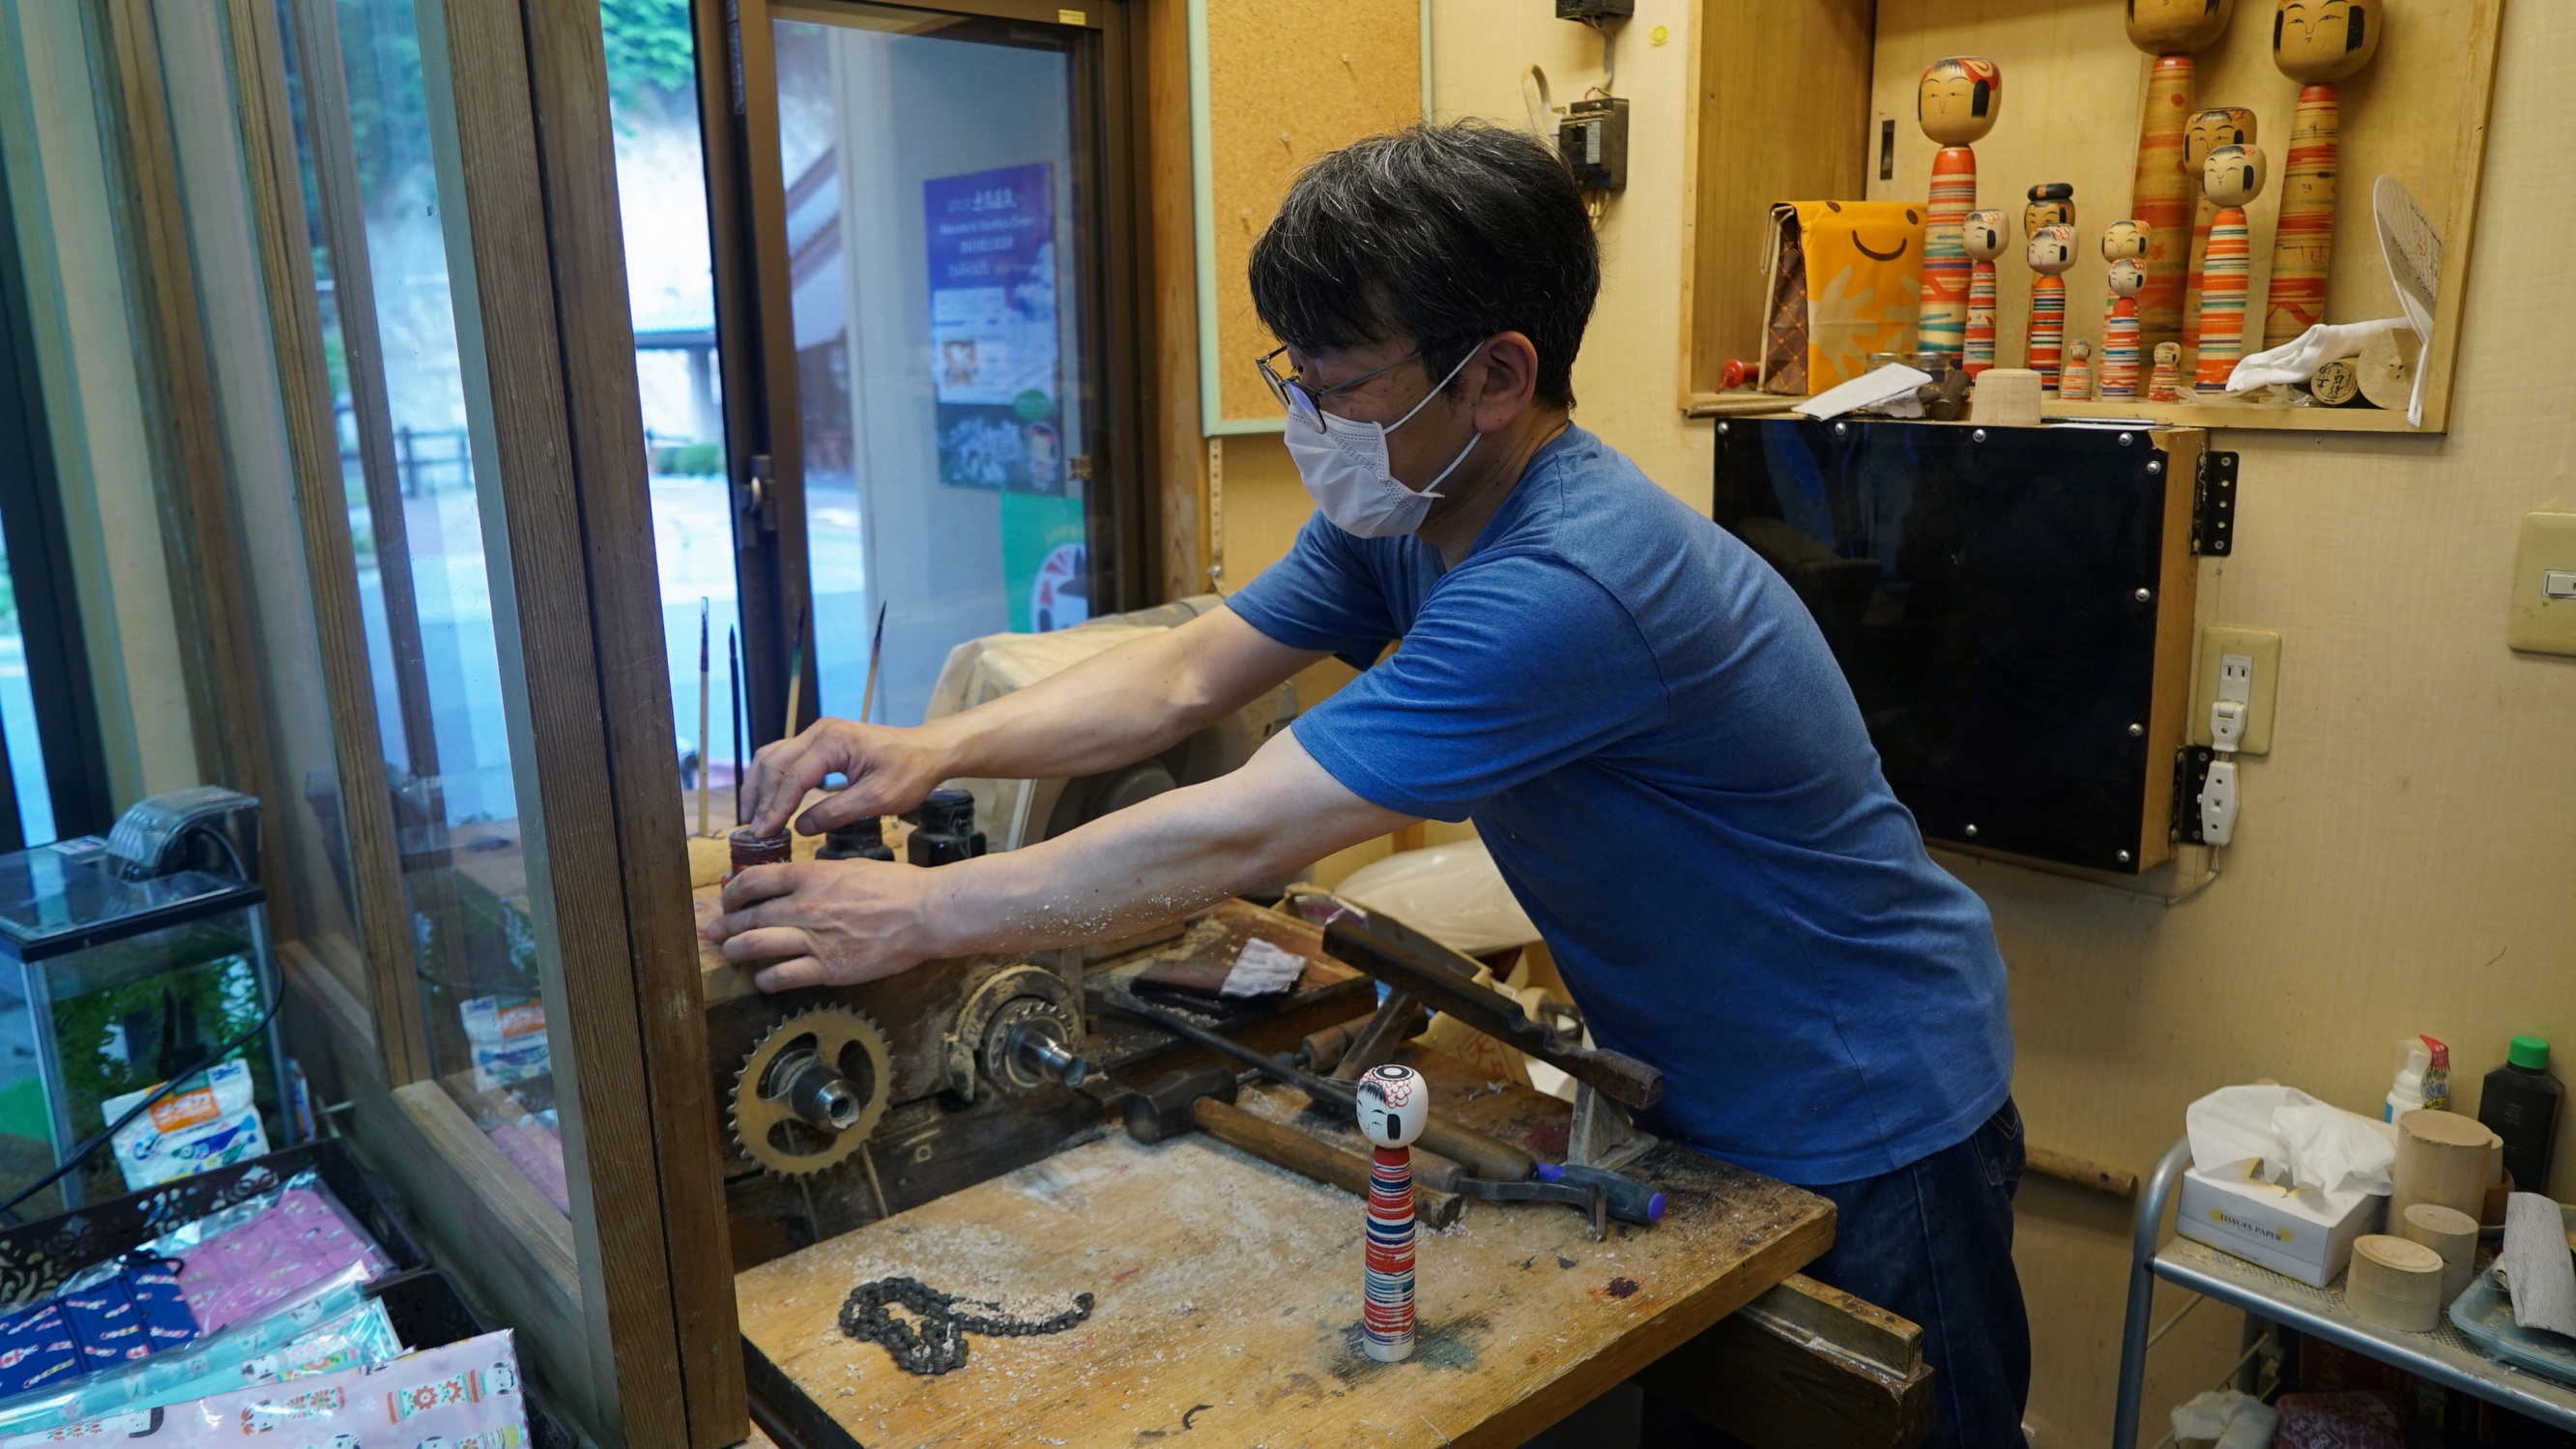 Sixth generation kokeshi maker Kunitoshi Abe cleans up after making a kokeshi at his shop in Tsuchiyu Onsen Machi